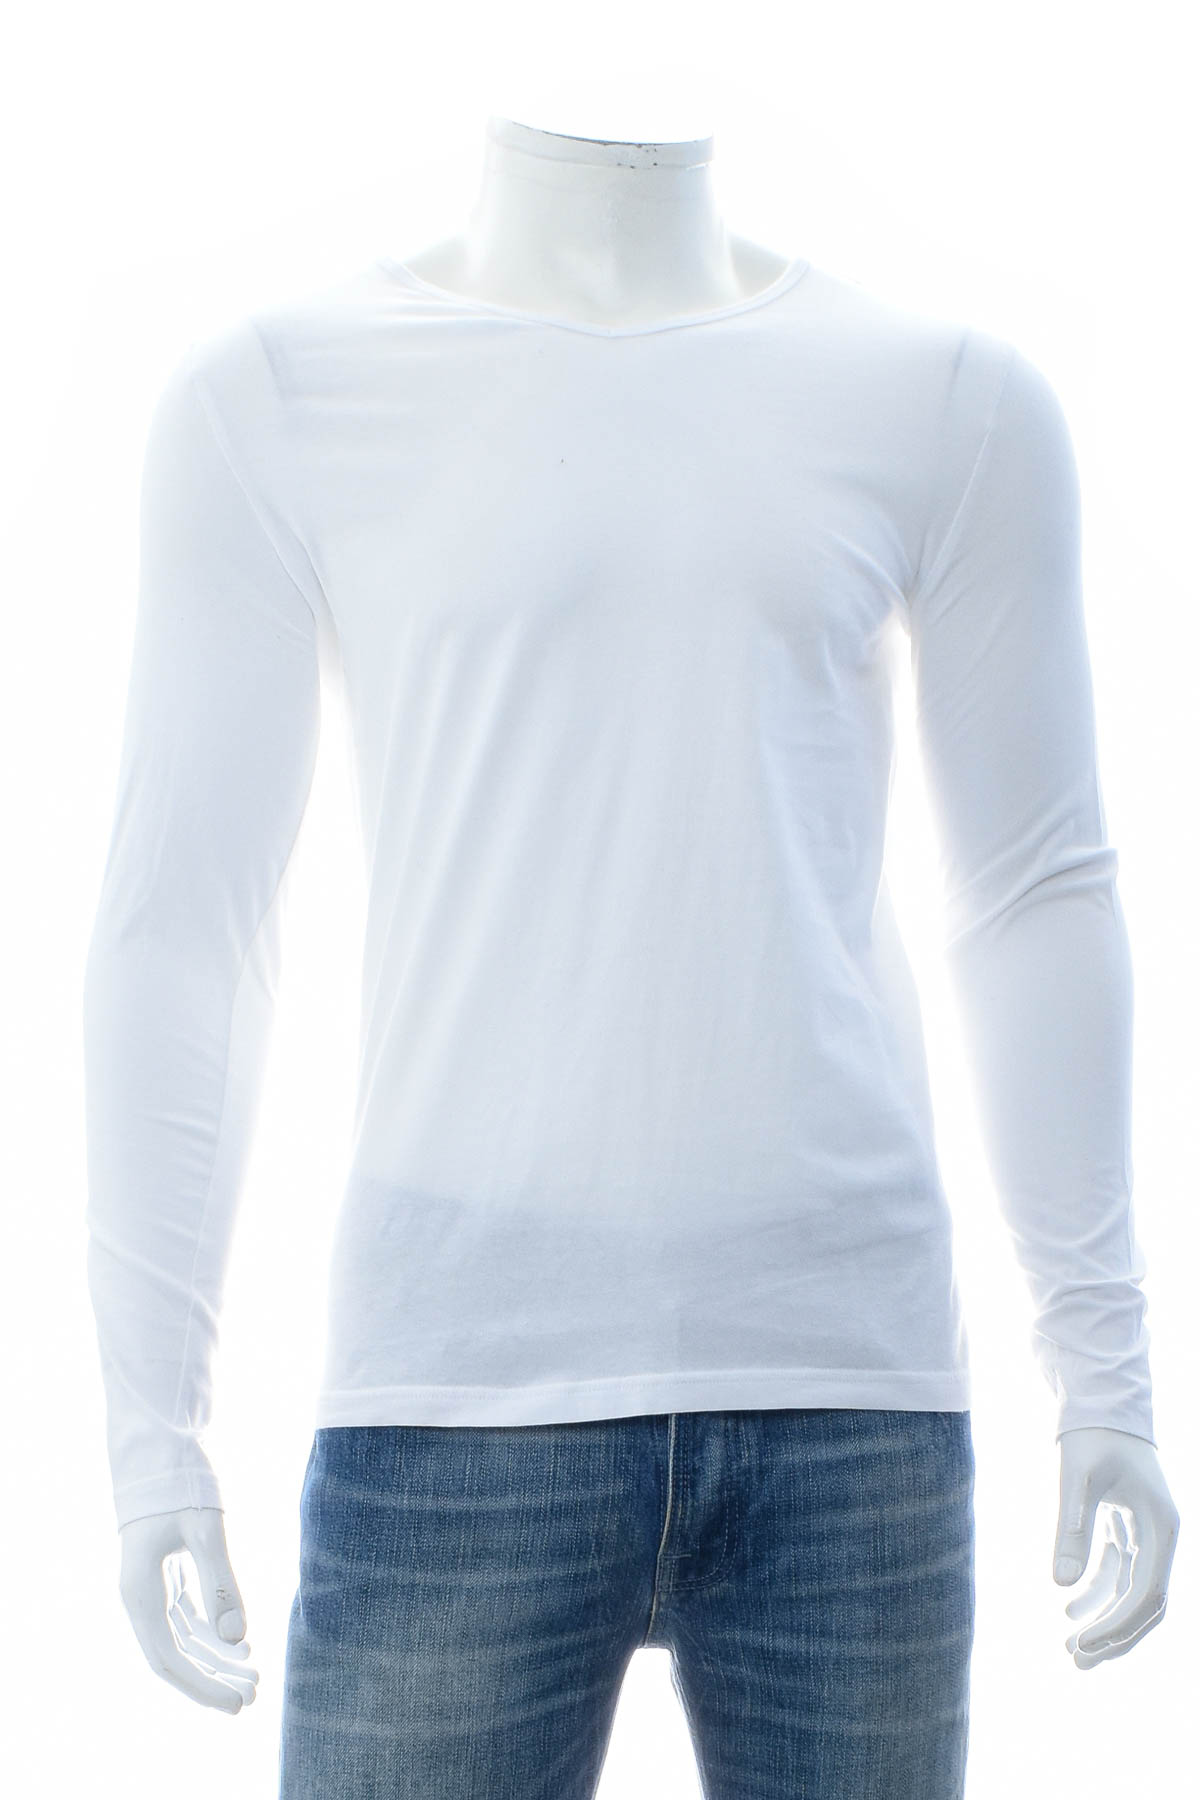 Ανδρική μπλούζα - Watsons - 0